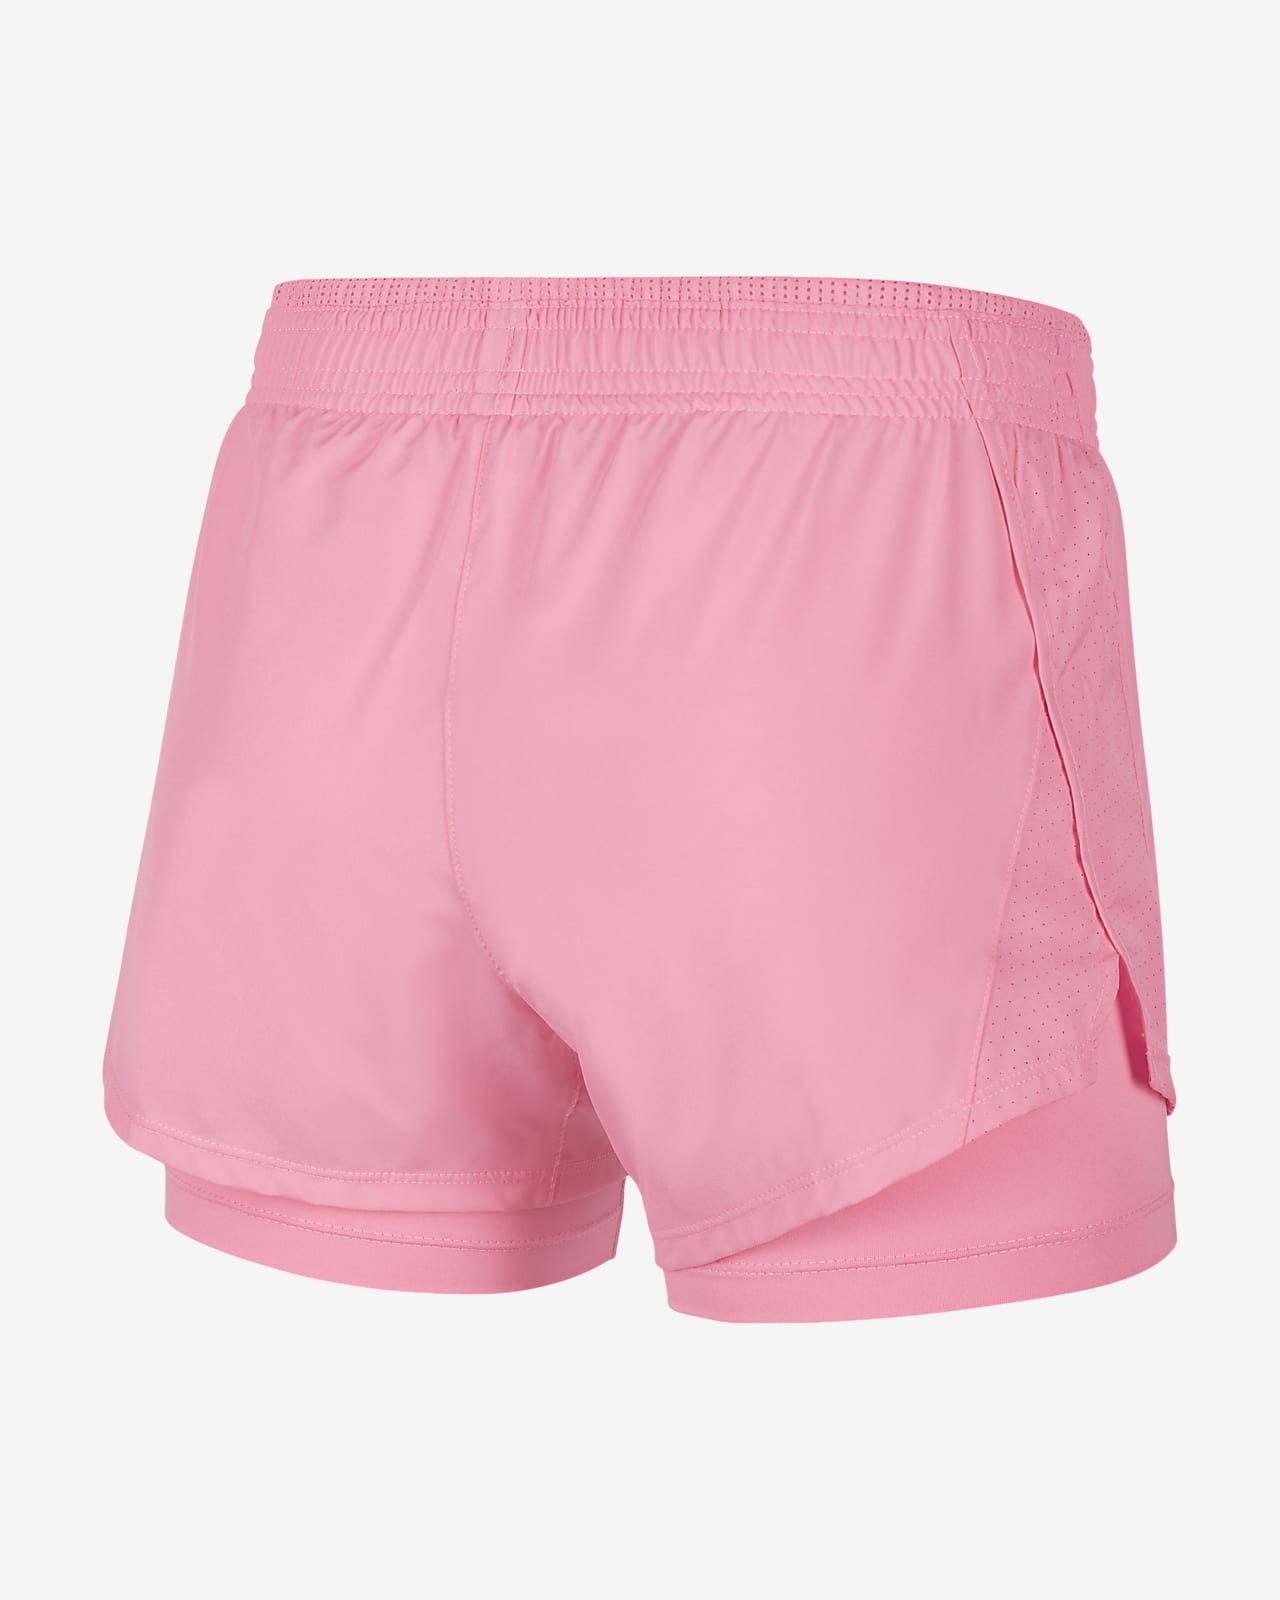 pink shorts nike